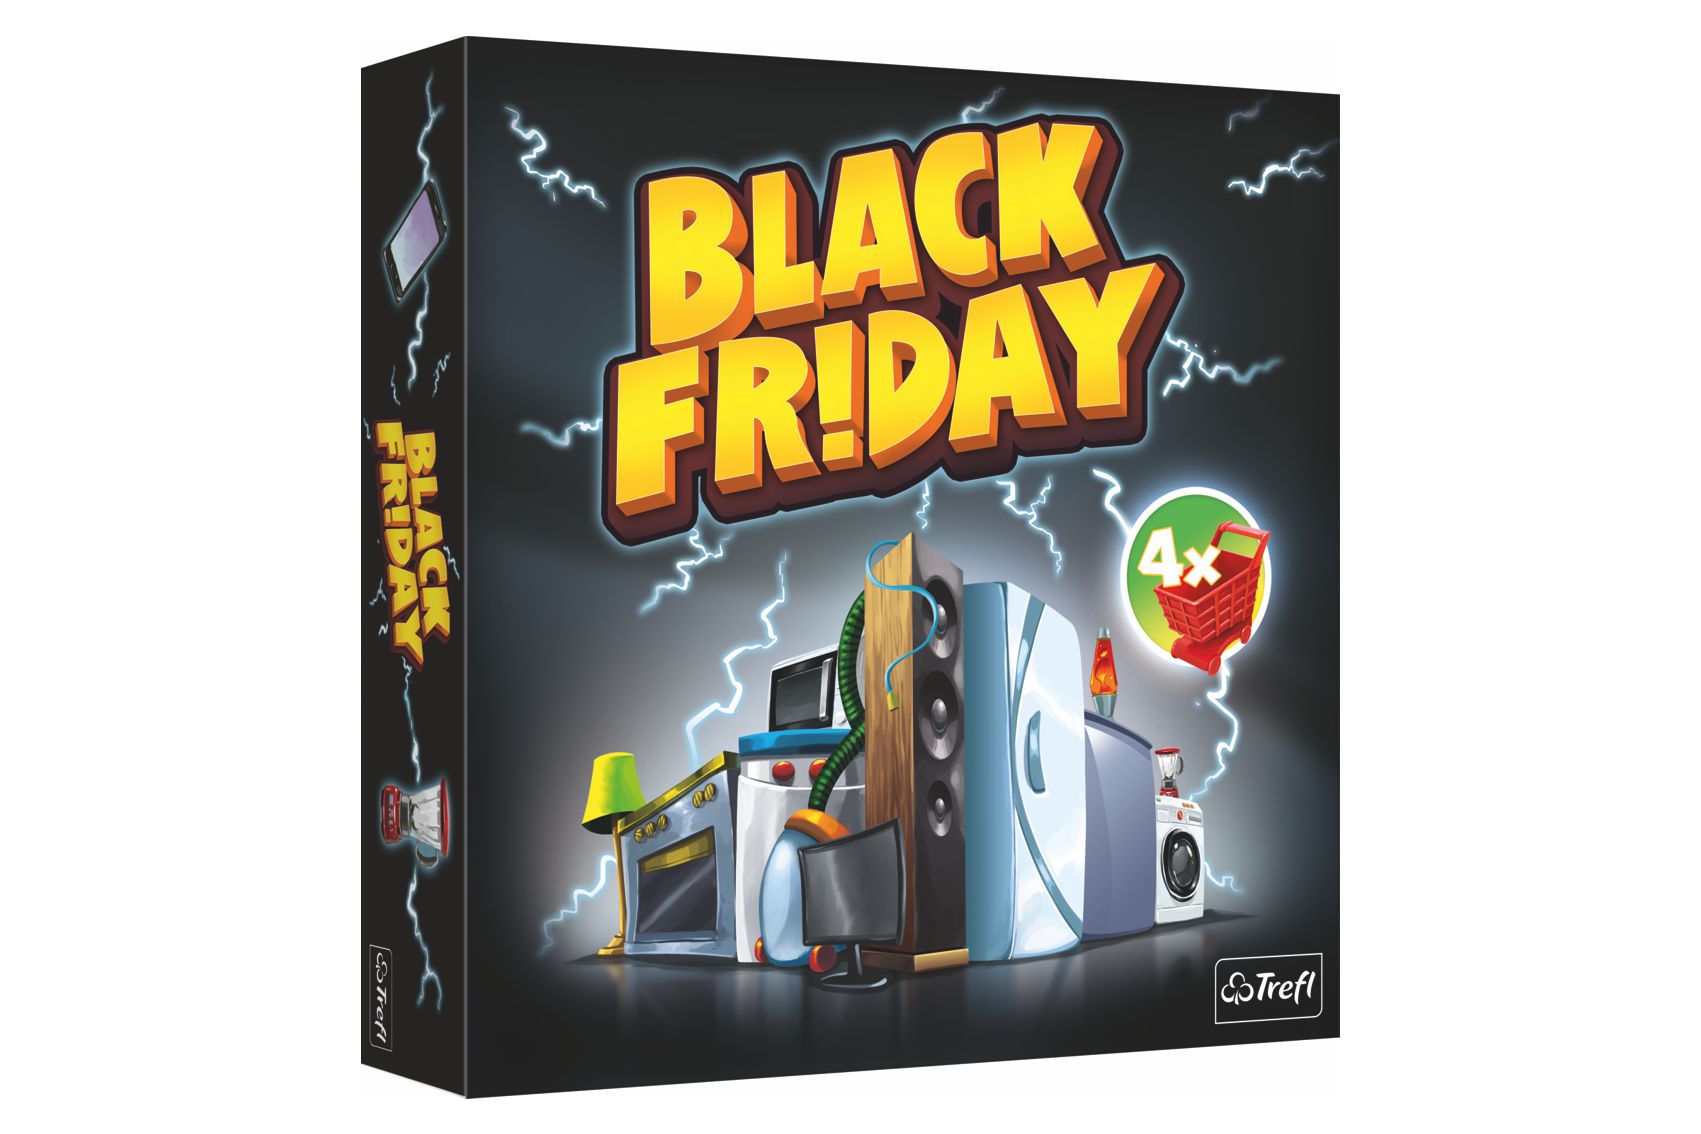 Trefl Black Friday společenská hra v krabici 26x26x4cm